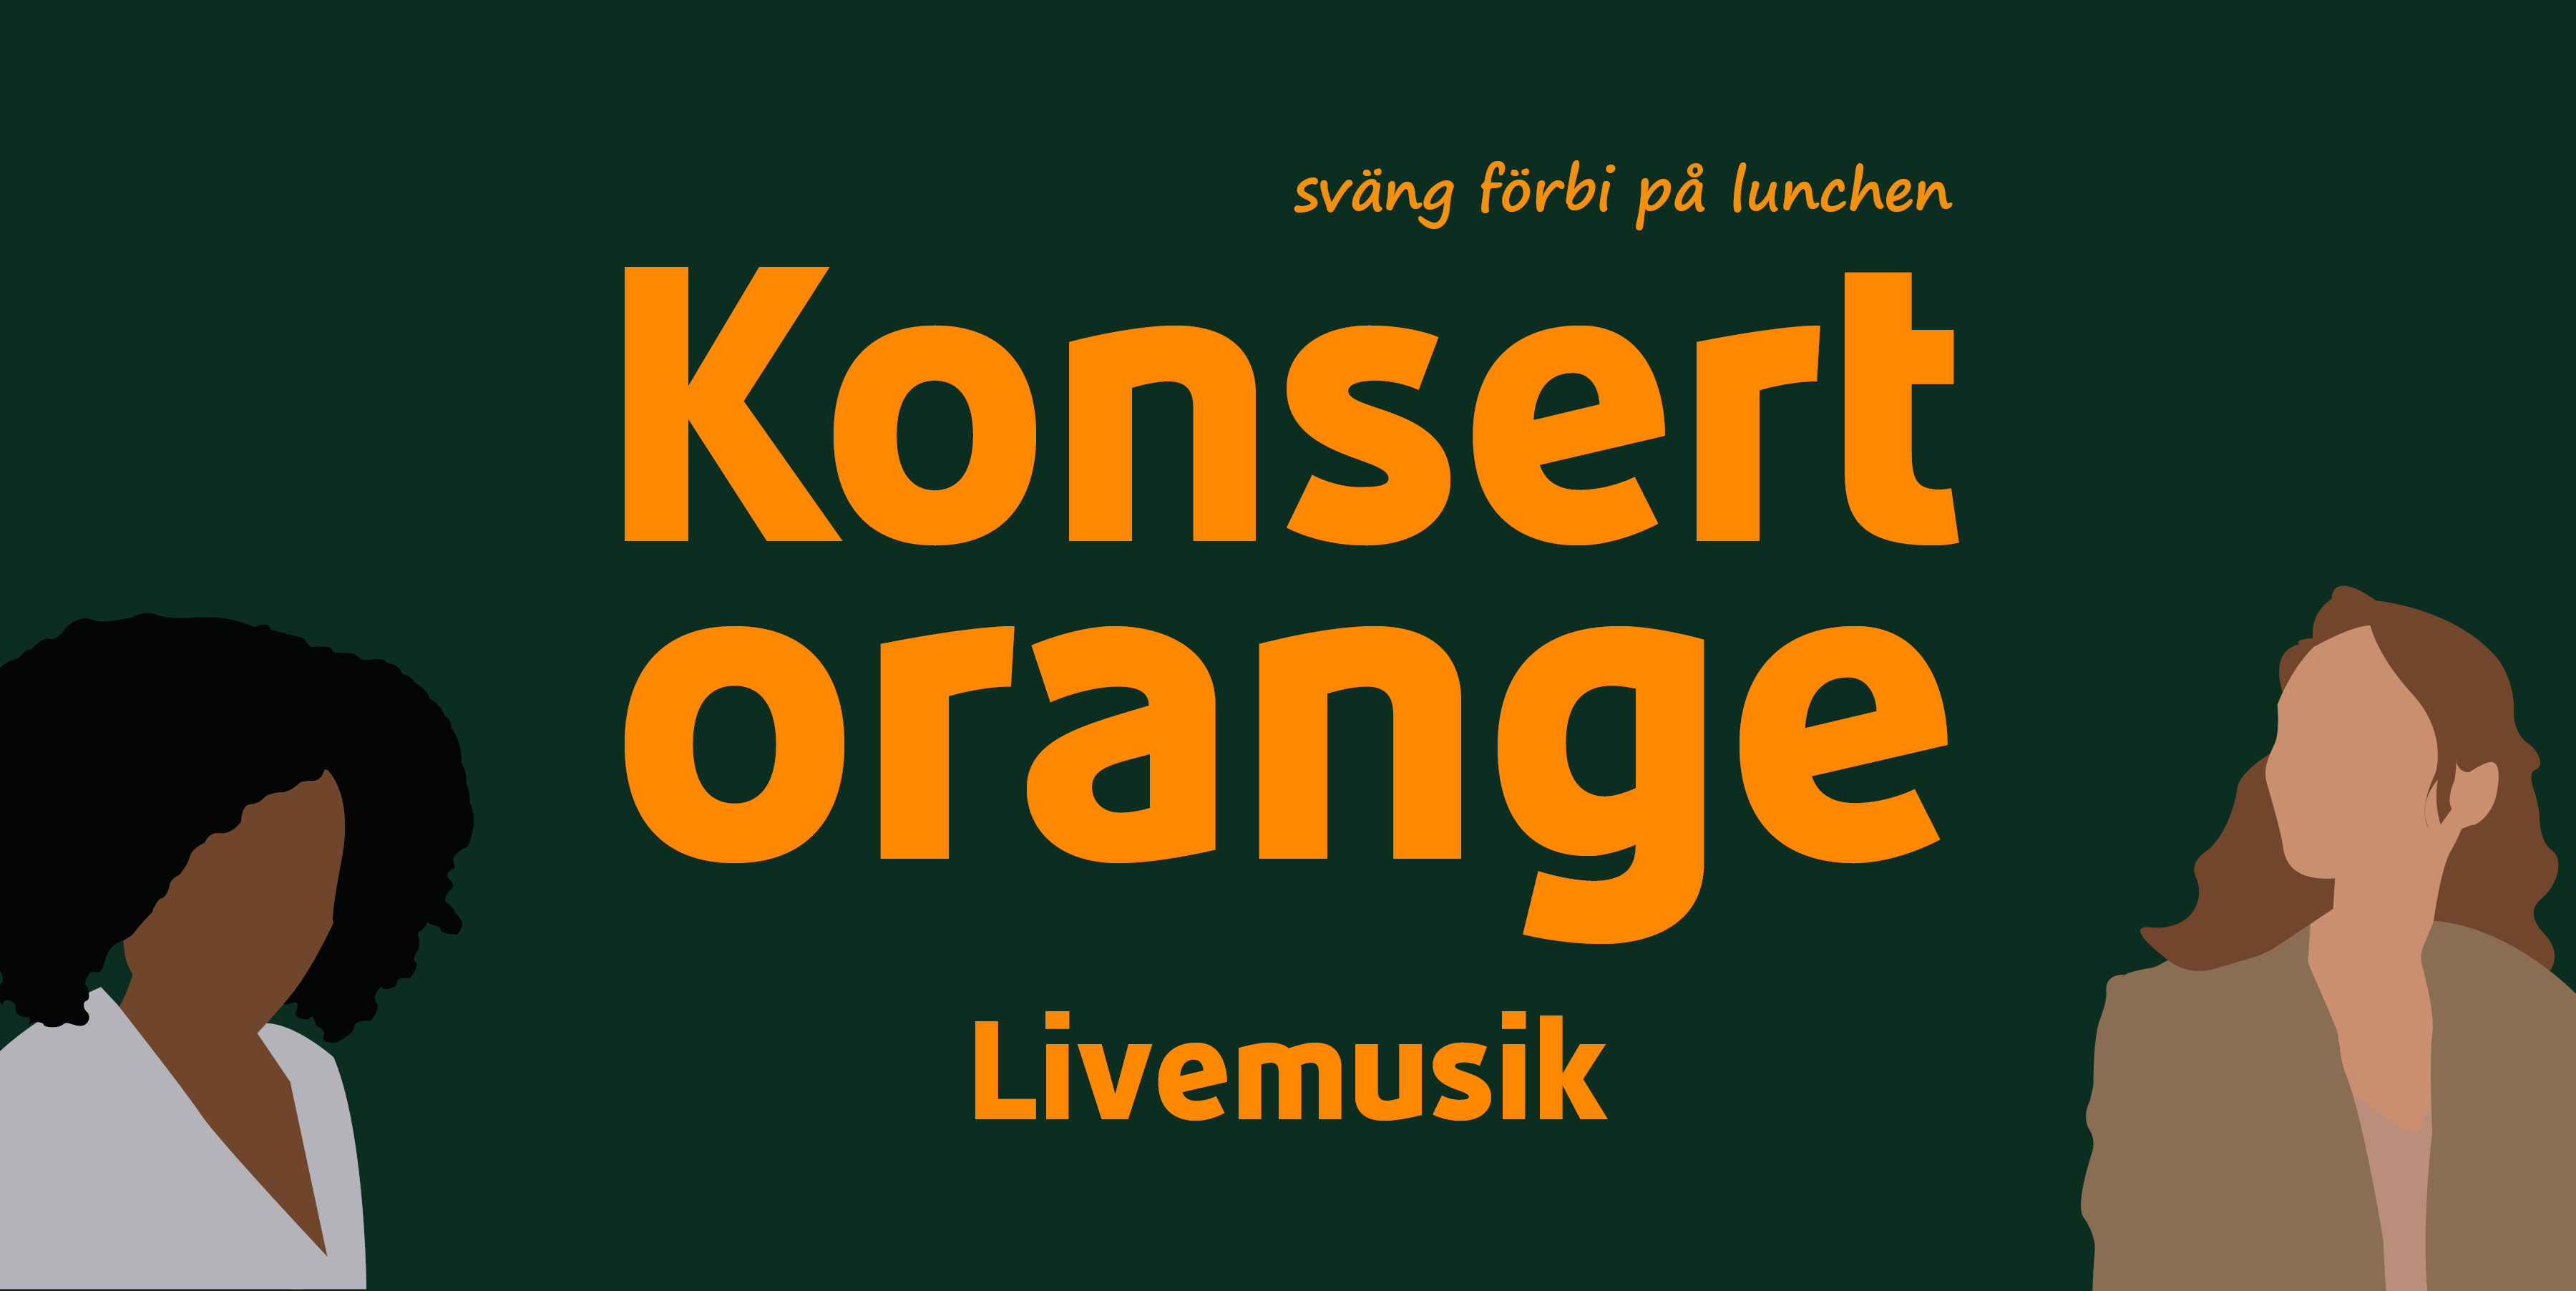 Illustration med texten "Konsert Orange livemusik" med två illustrerade kvinnor på var sin sida. 